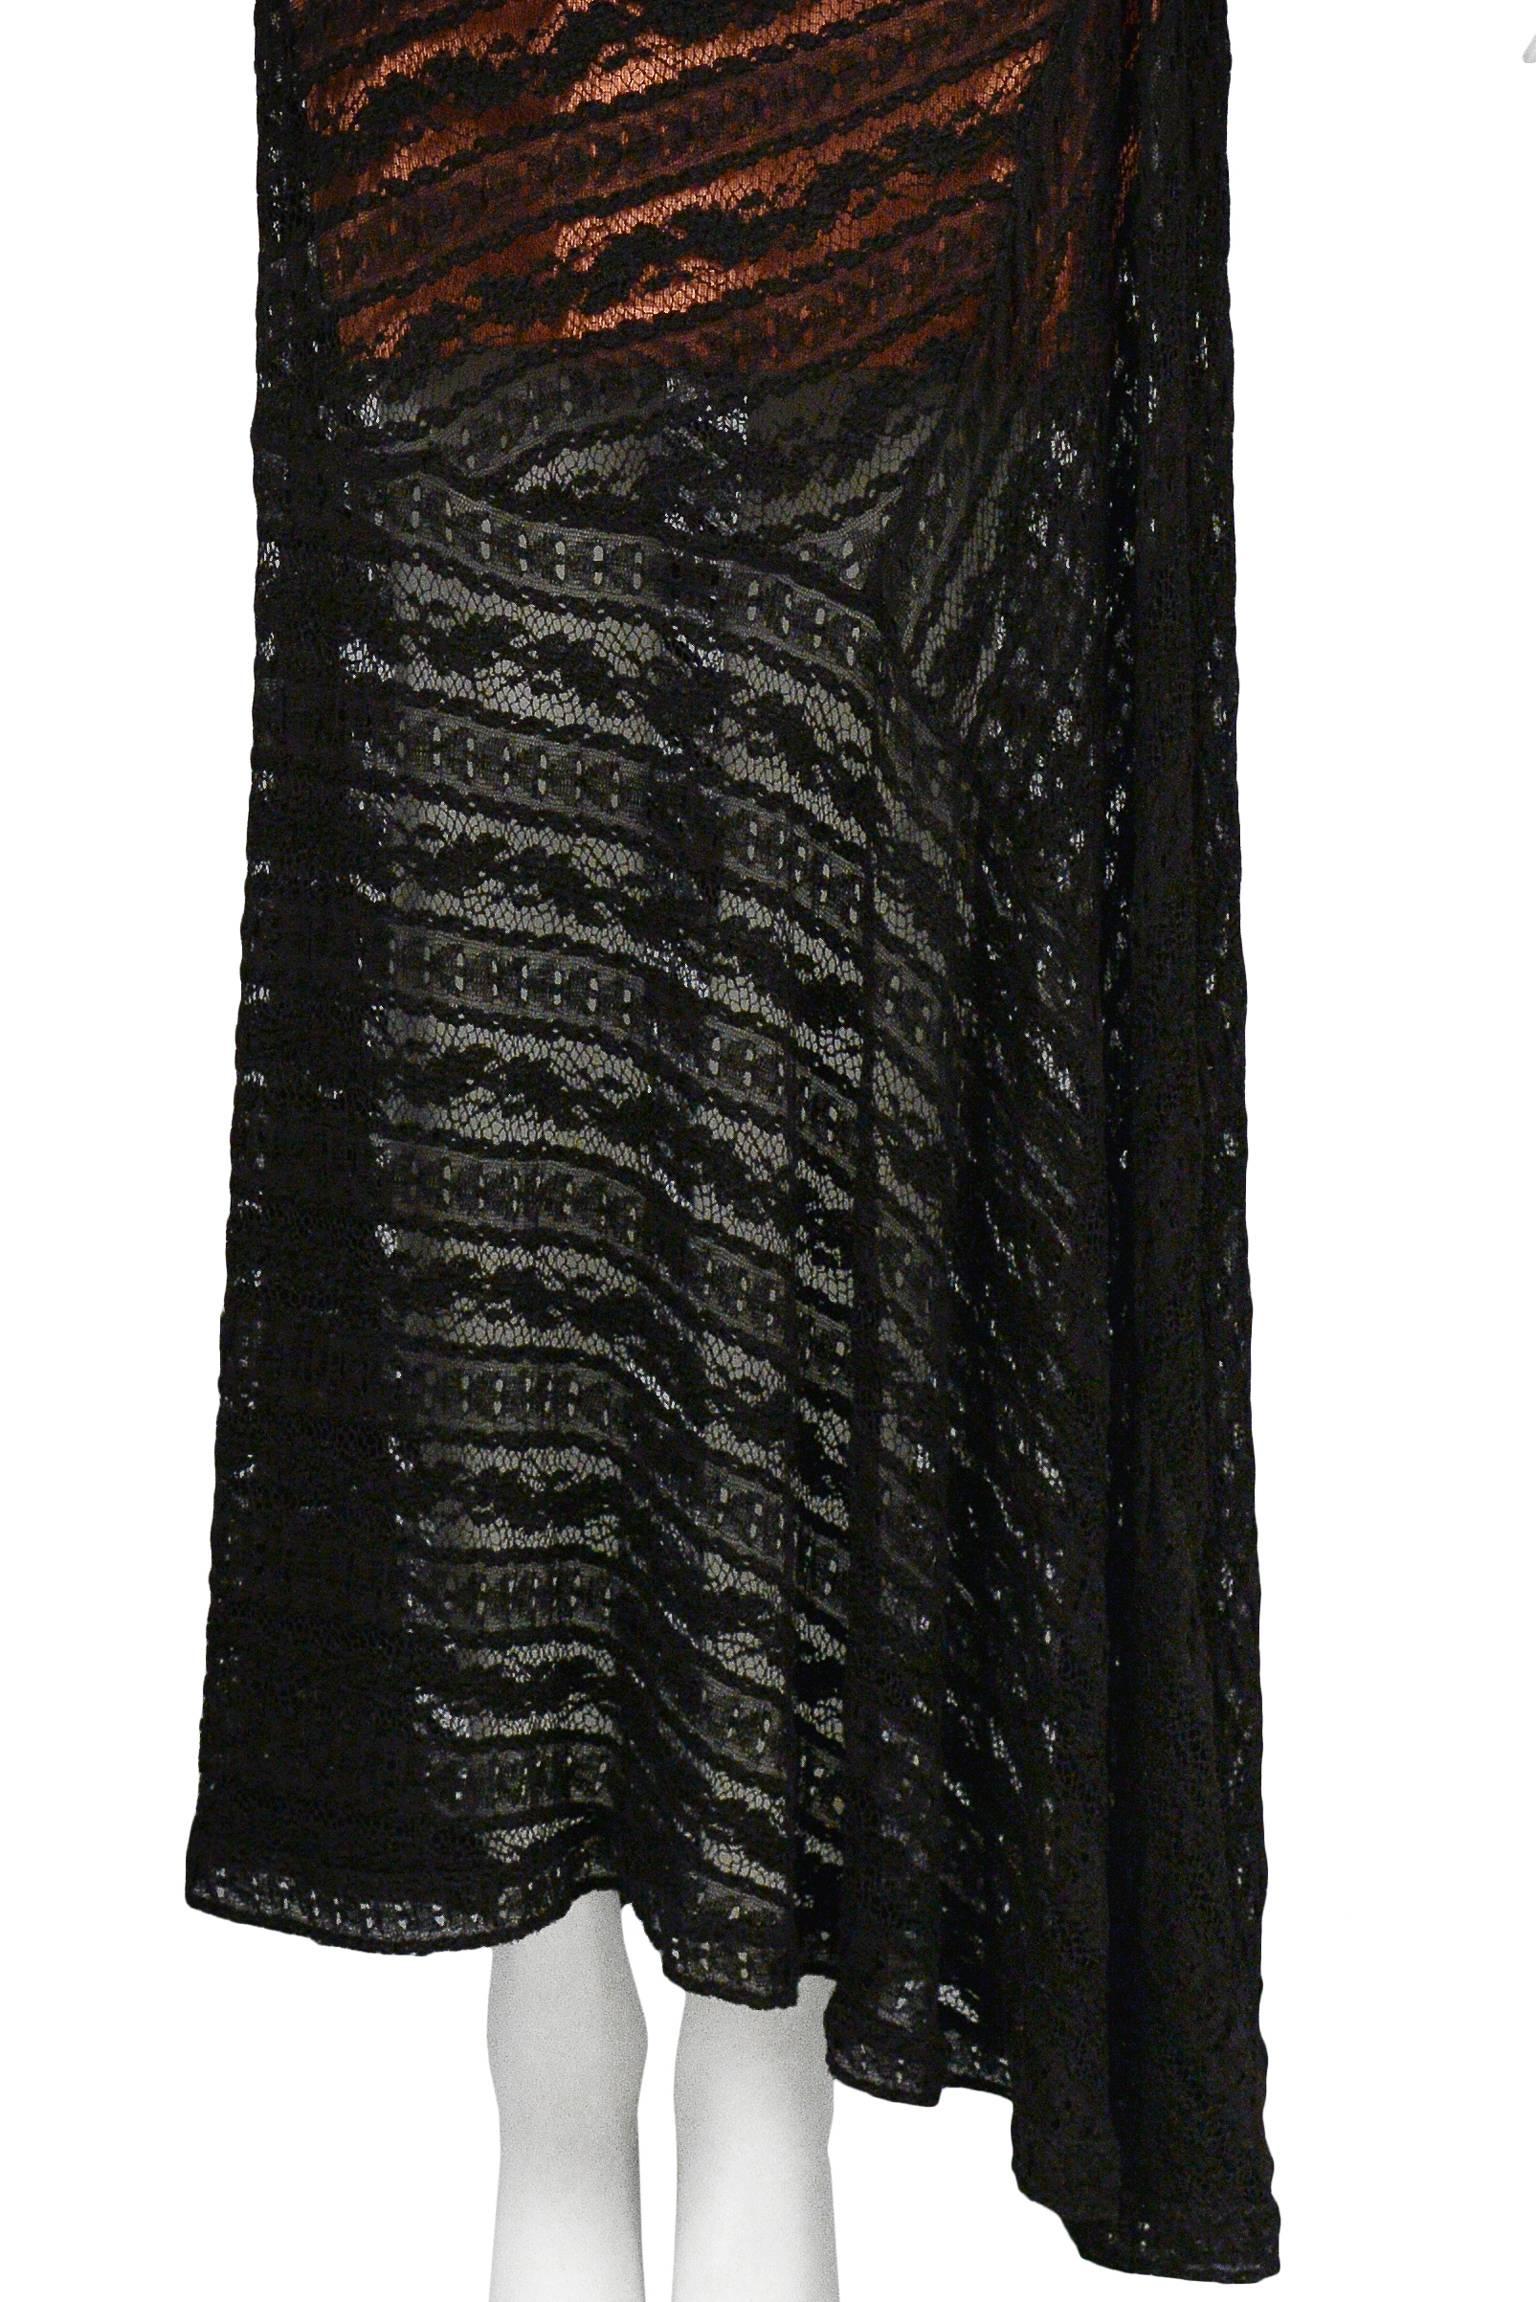 Women's Alaia Lace Slip Gown 1993